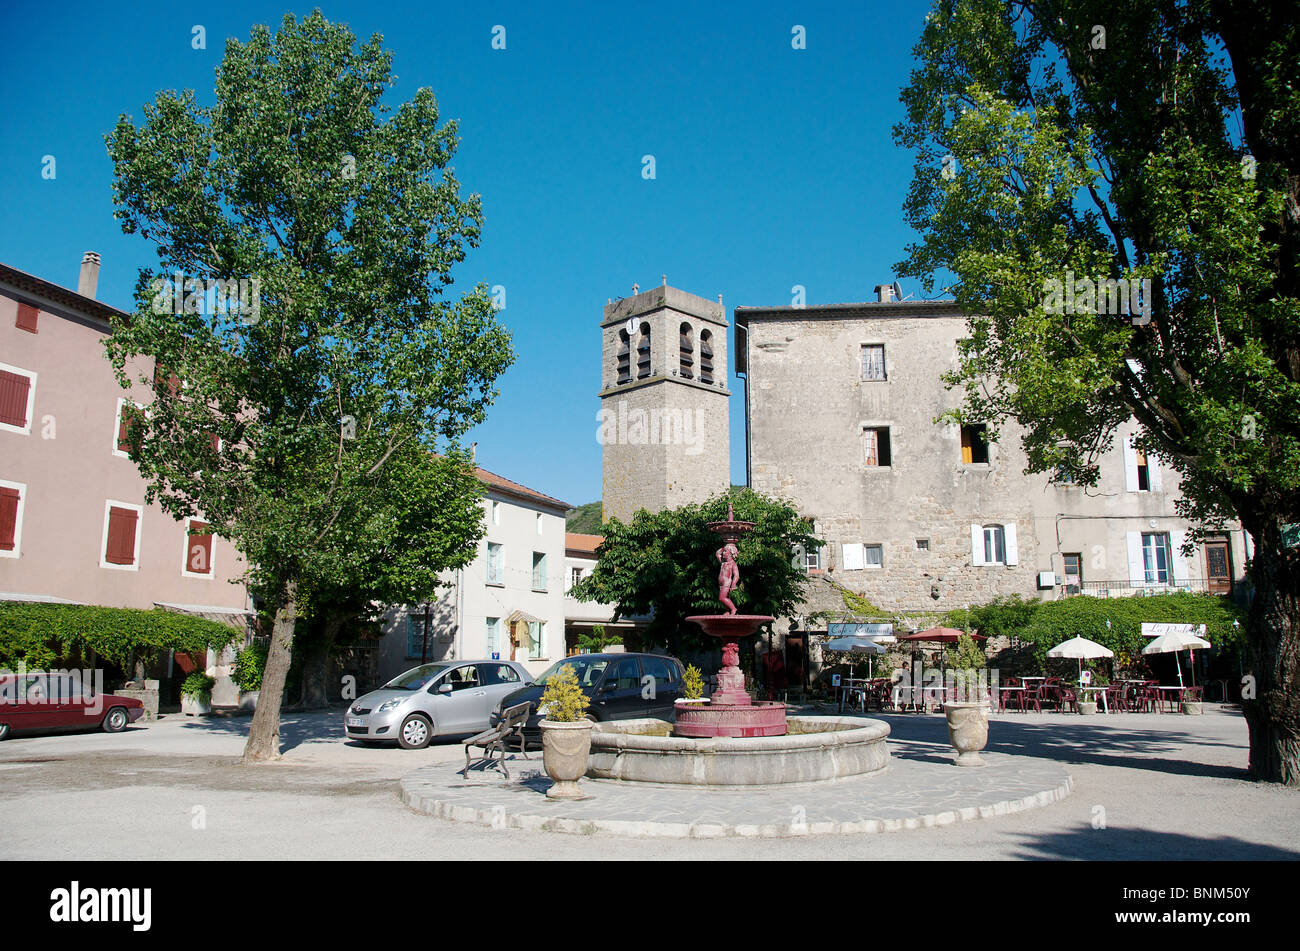 village, square, Antraigues sur Volane, Ardeche, France Stock Photo - Alamy